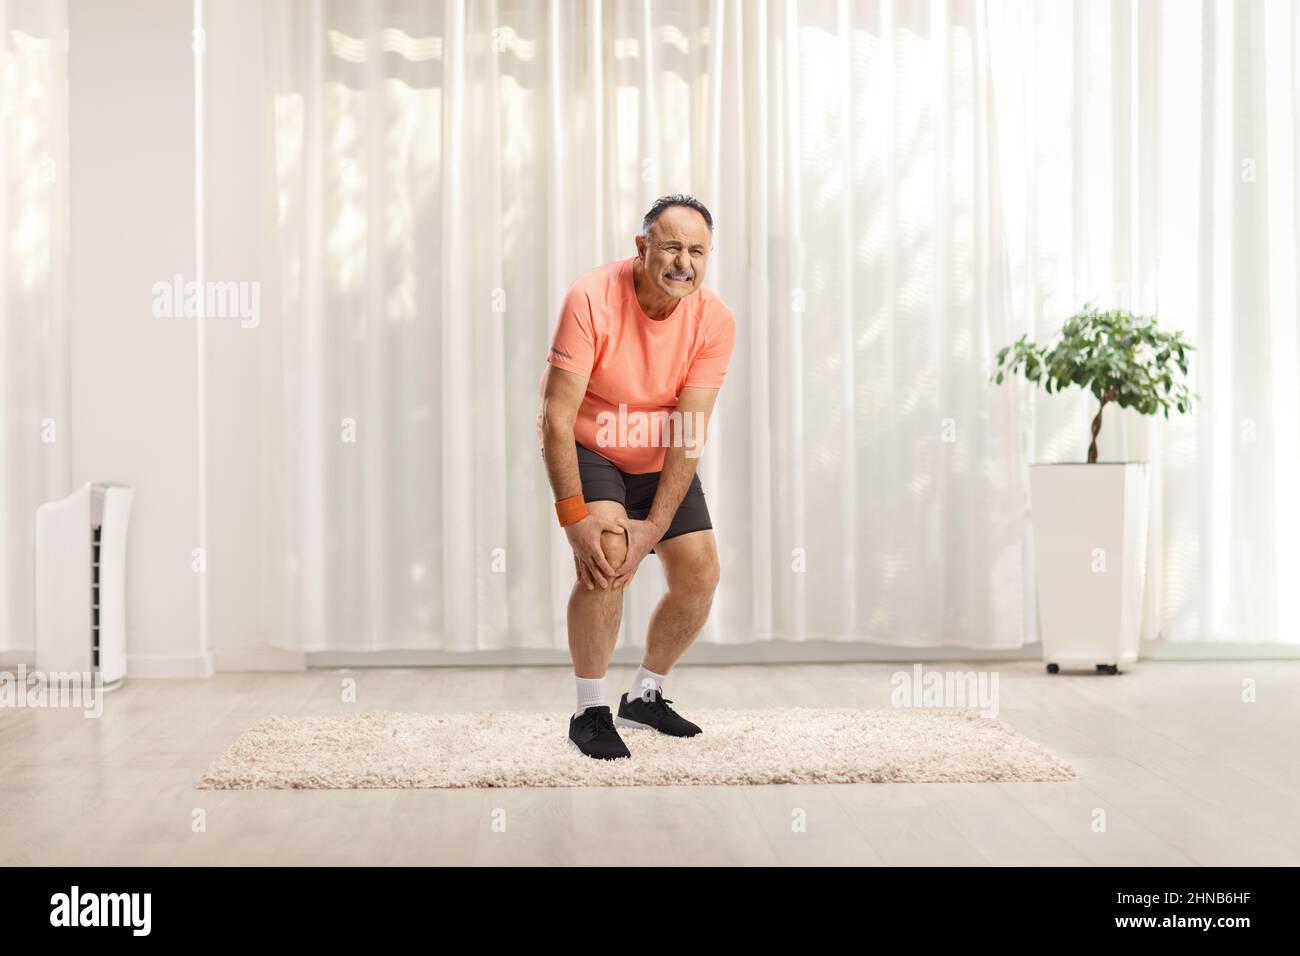 Reifer Mann in Sportkleidung, der sein schmerzhaftes Knie in einem Raum hält Stockfoto